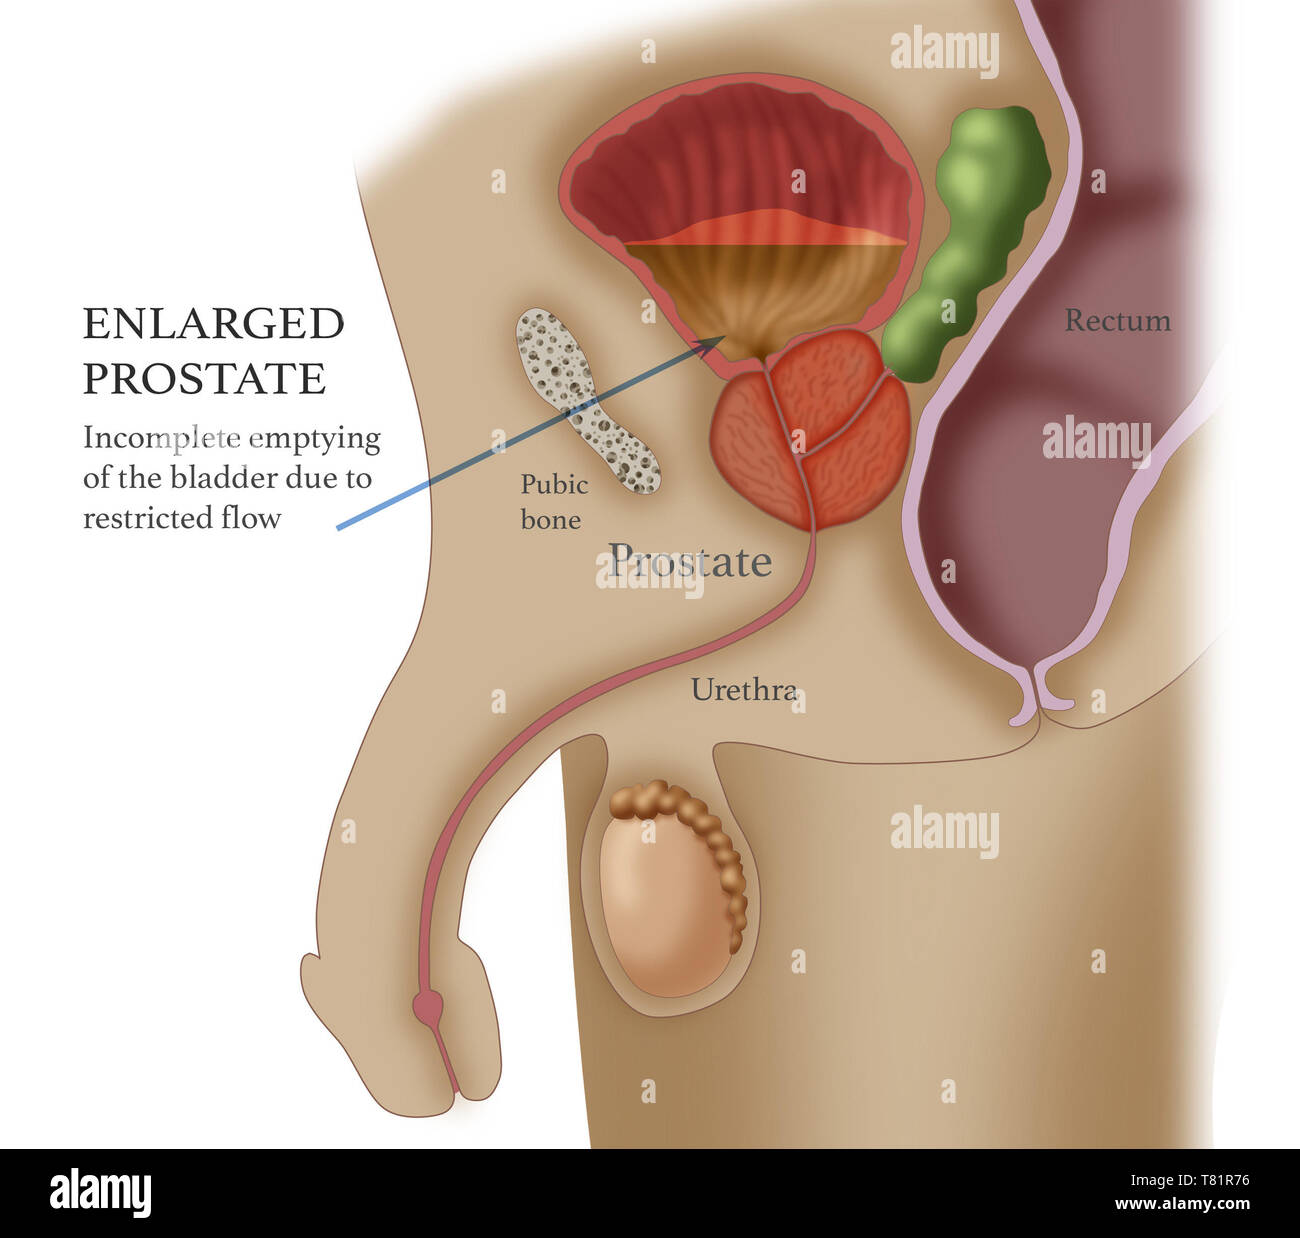 Enlarged Prostate, Illustration Stock Photo